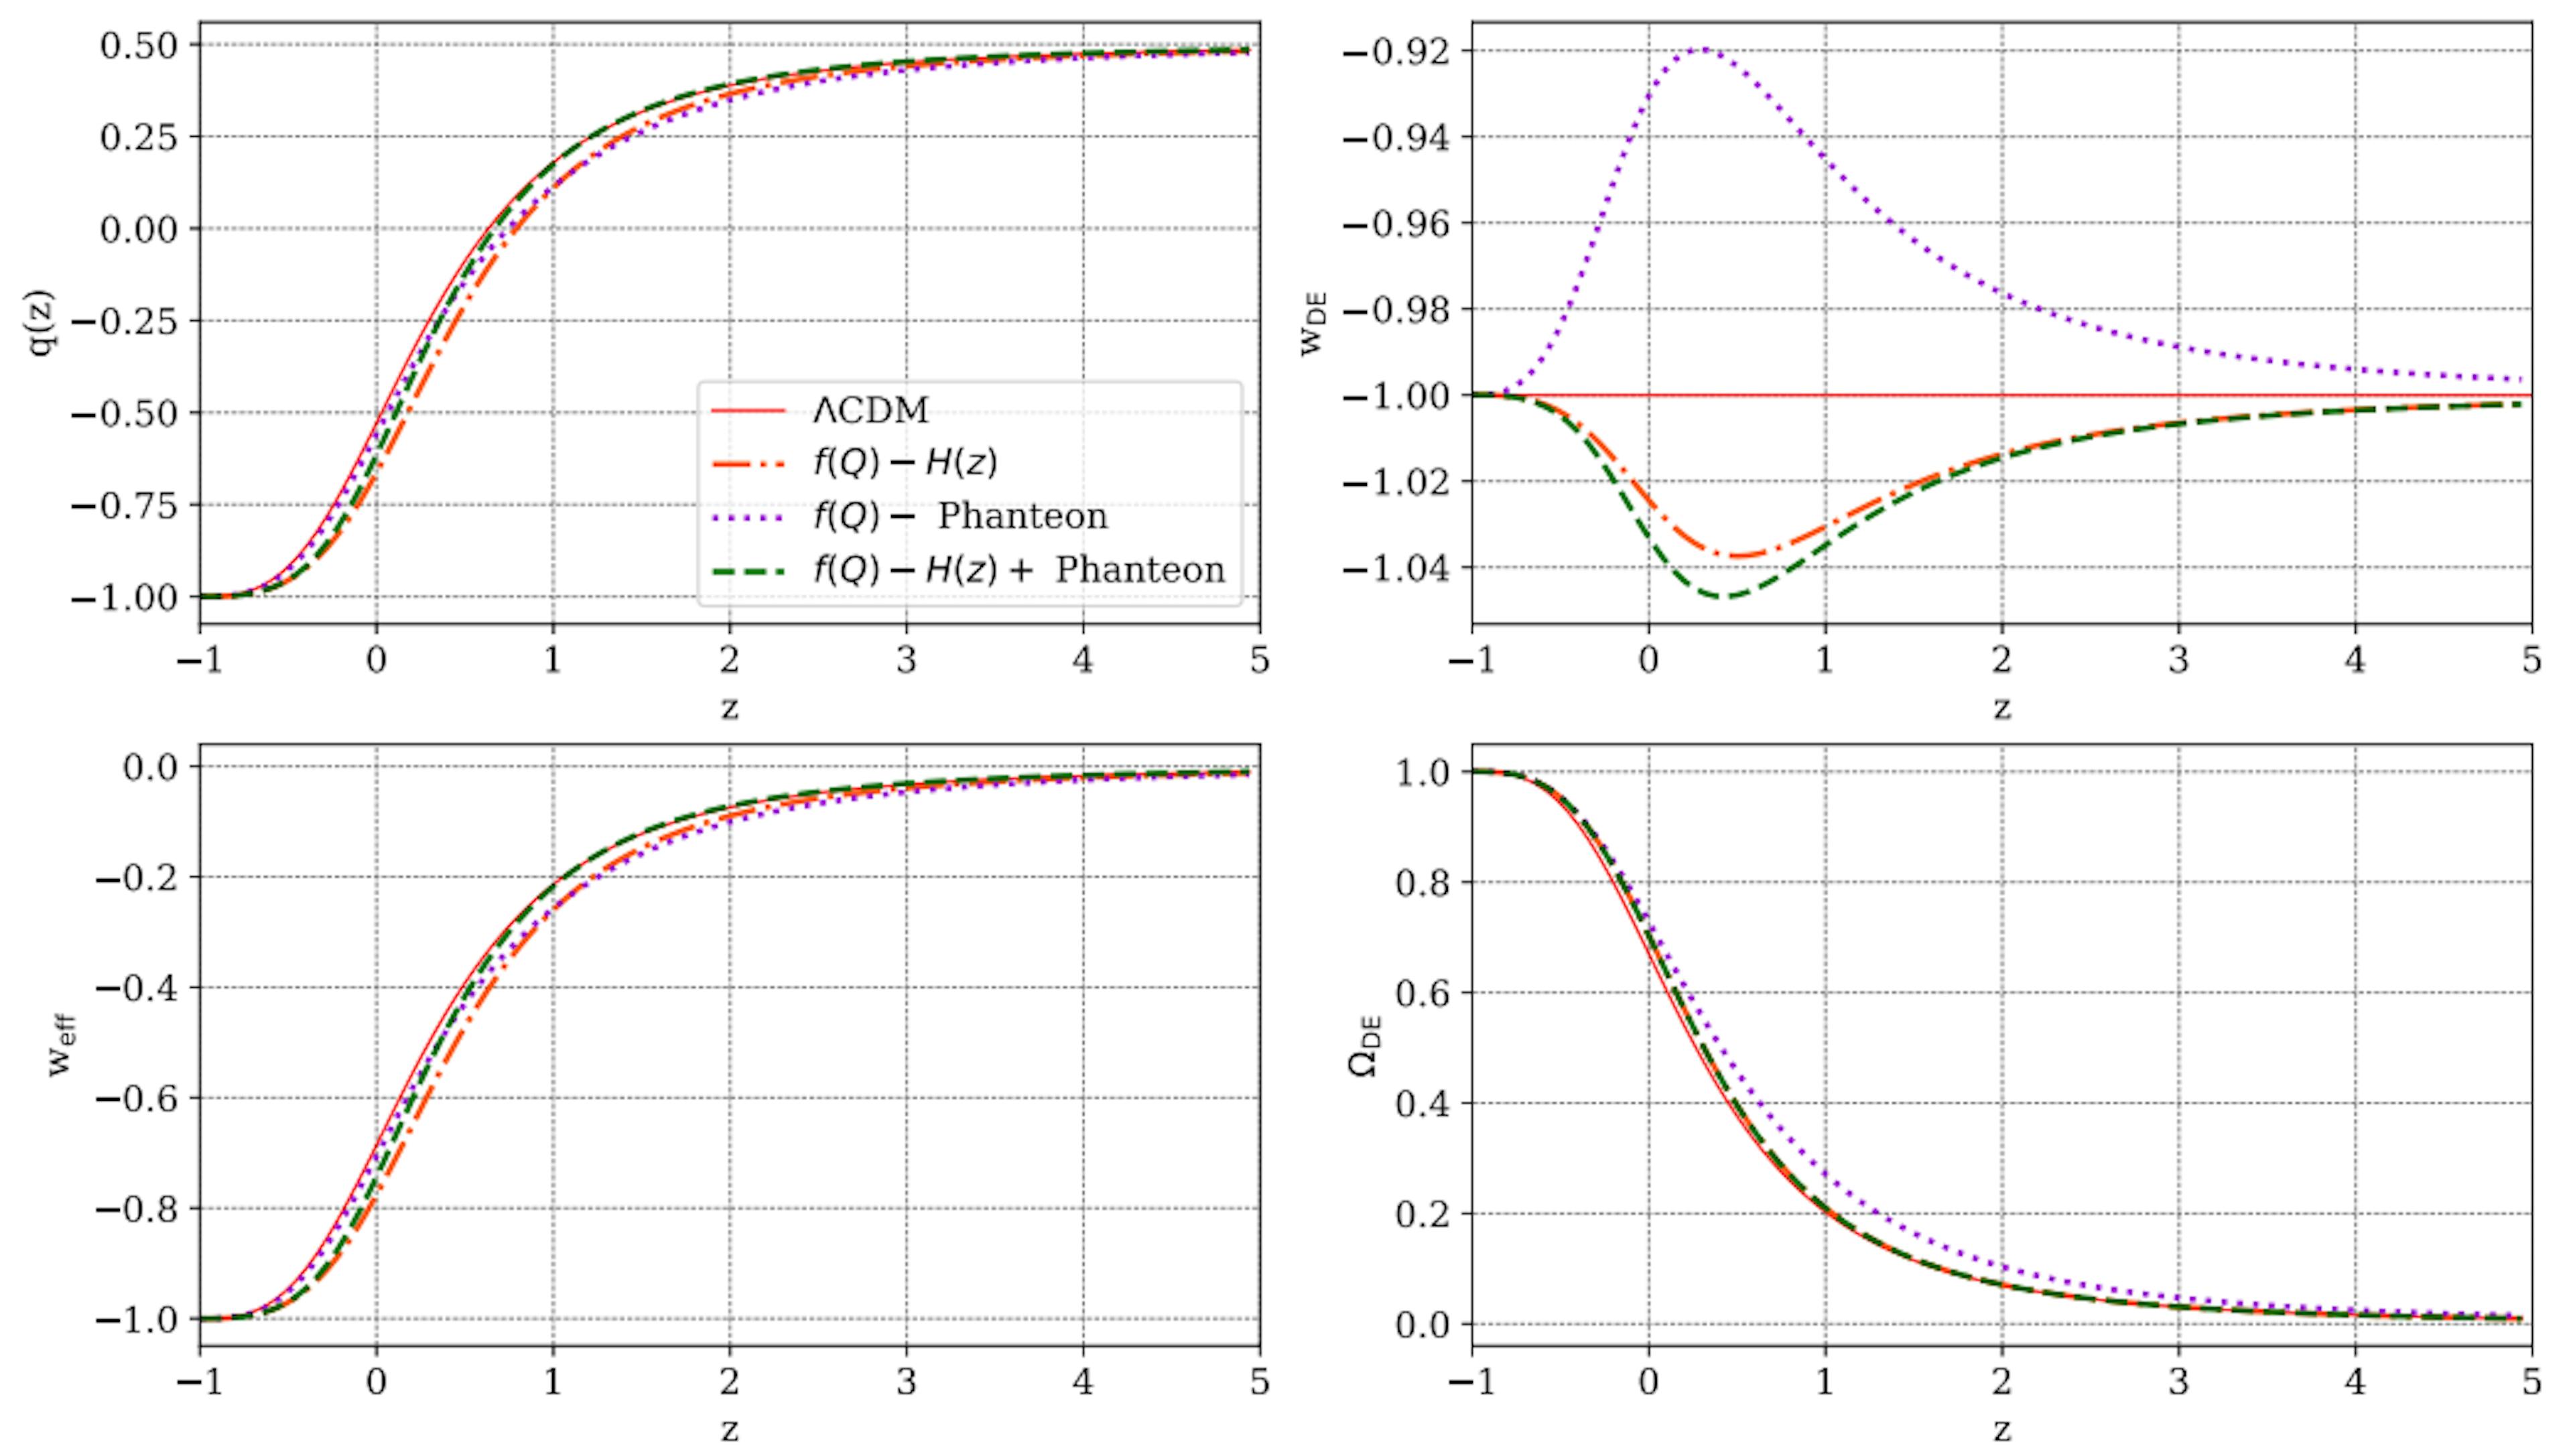 図 7: この研究で提示された f(Q) モデルで予測される、赤方偏移 z に対するいくつかの宇宙論パラメータの進化を、ΛCDM 予測 (赤実線) と比較したもの。各パネルで、オレンジ色の点線、紫色の点線、緑の破線は、それぞれ H(z)、パンテオン、H(z)+ パンテオン サンプルからのパラメータ制約の結果です。